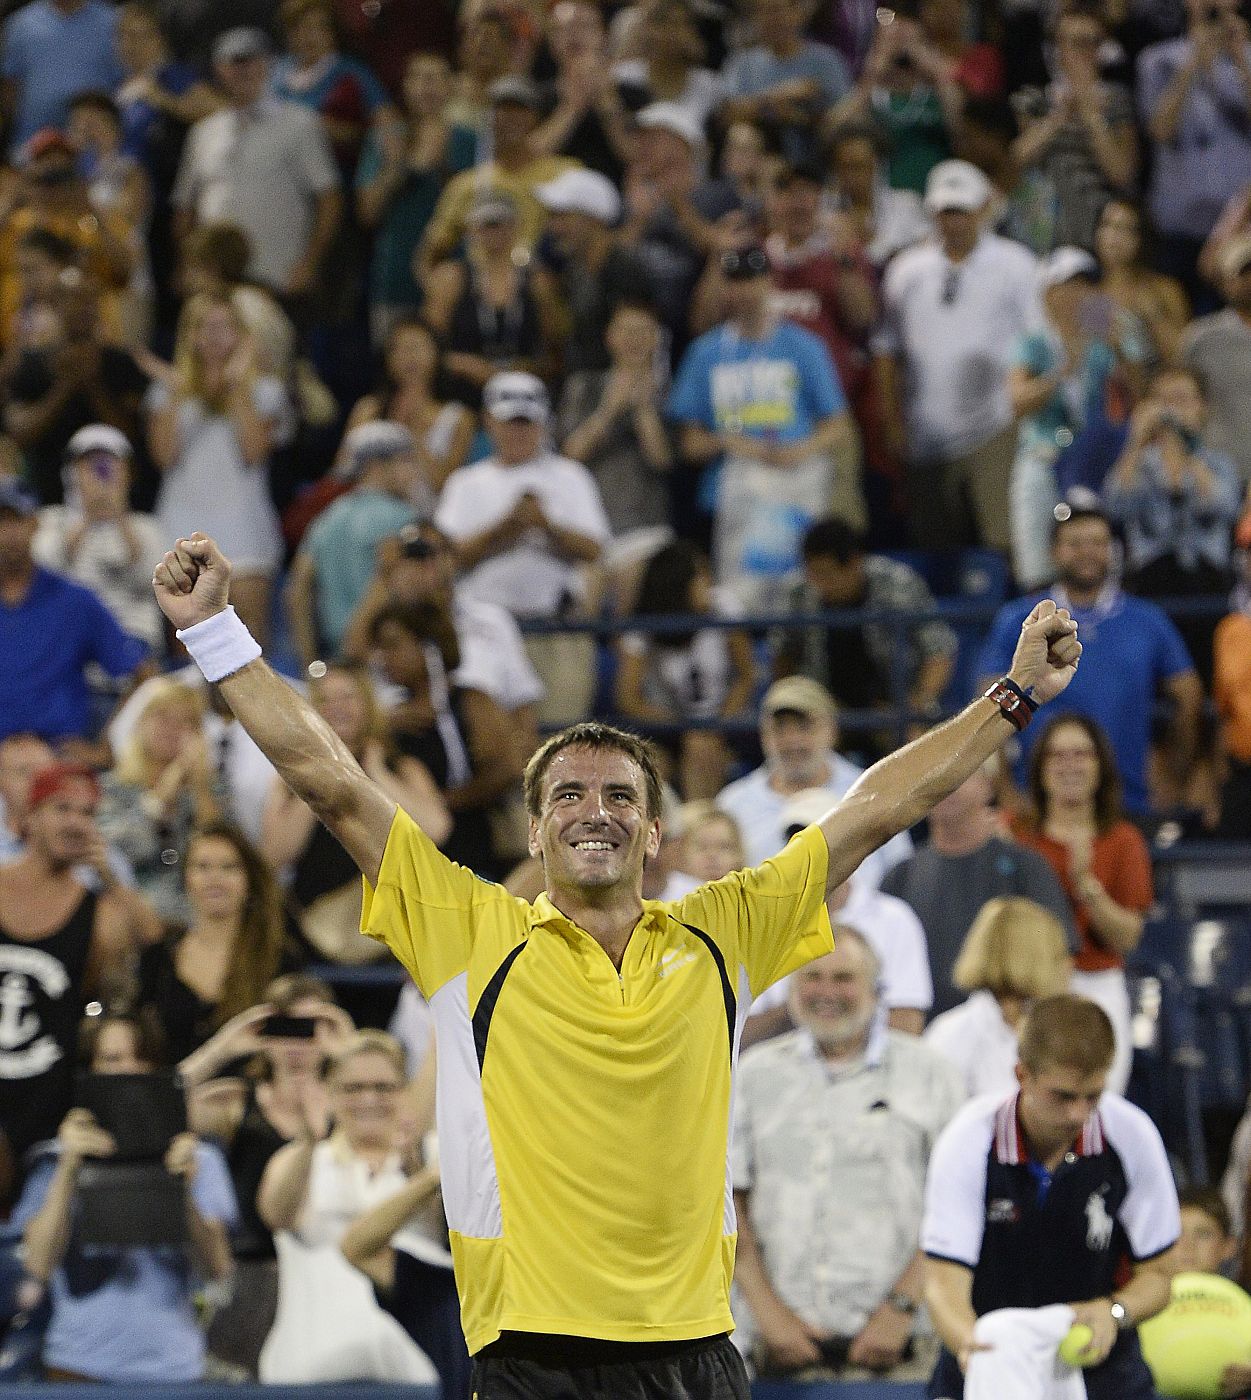 Tommy Robredo celebra su victoria sobre el tenista suizo Roger Federer en el Centro Nacional de Tenis de Flushing Meadows en Nueva York, EE.UU.